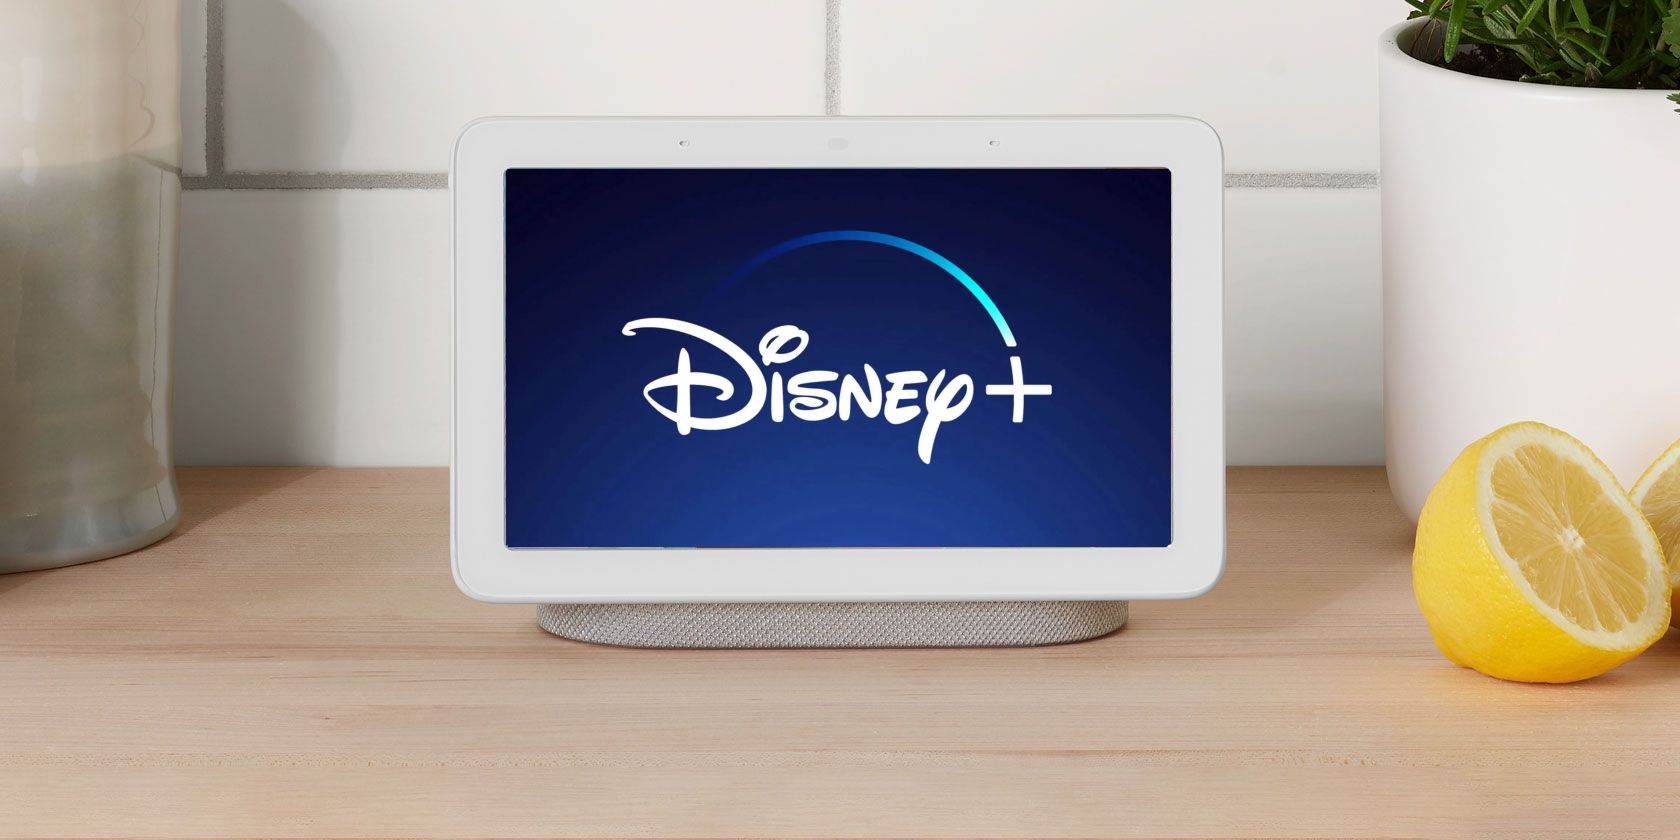 google nest disney plus - Disney + è ora in streaming sugli smart display dell’Assistente Google